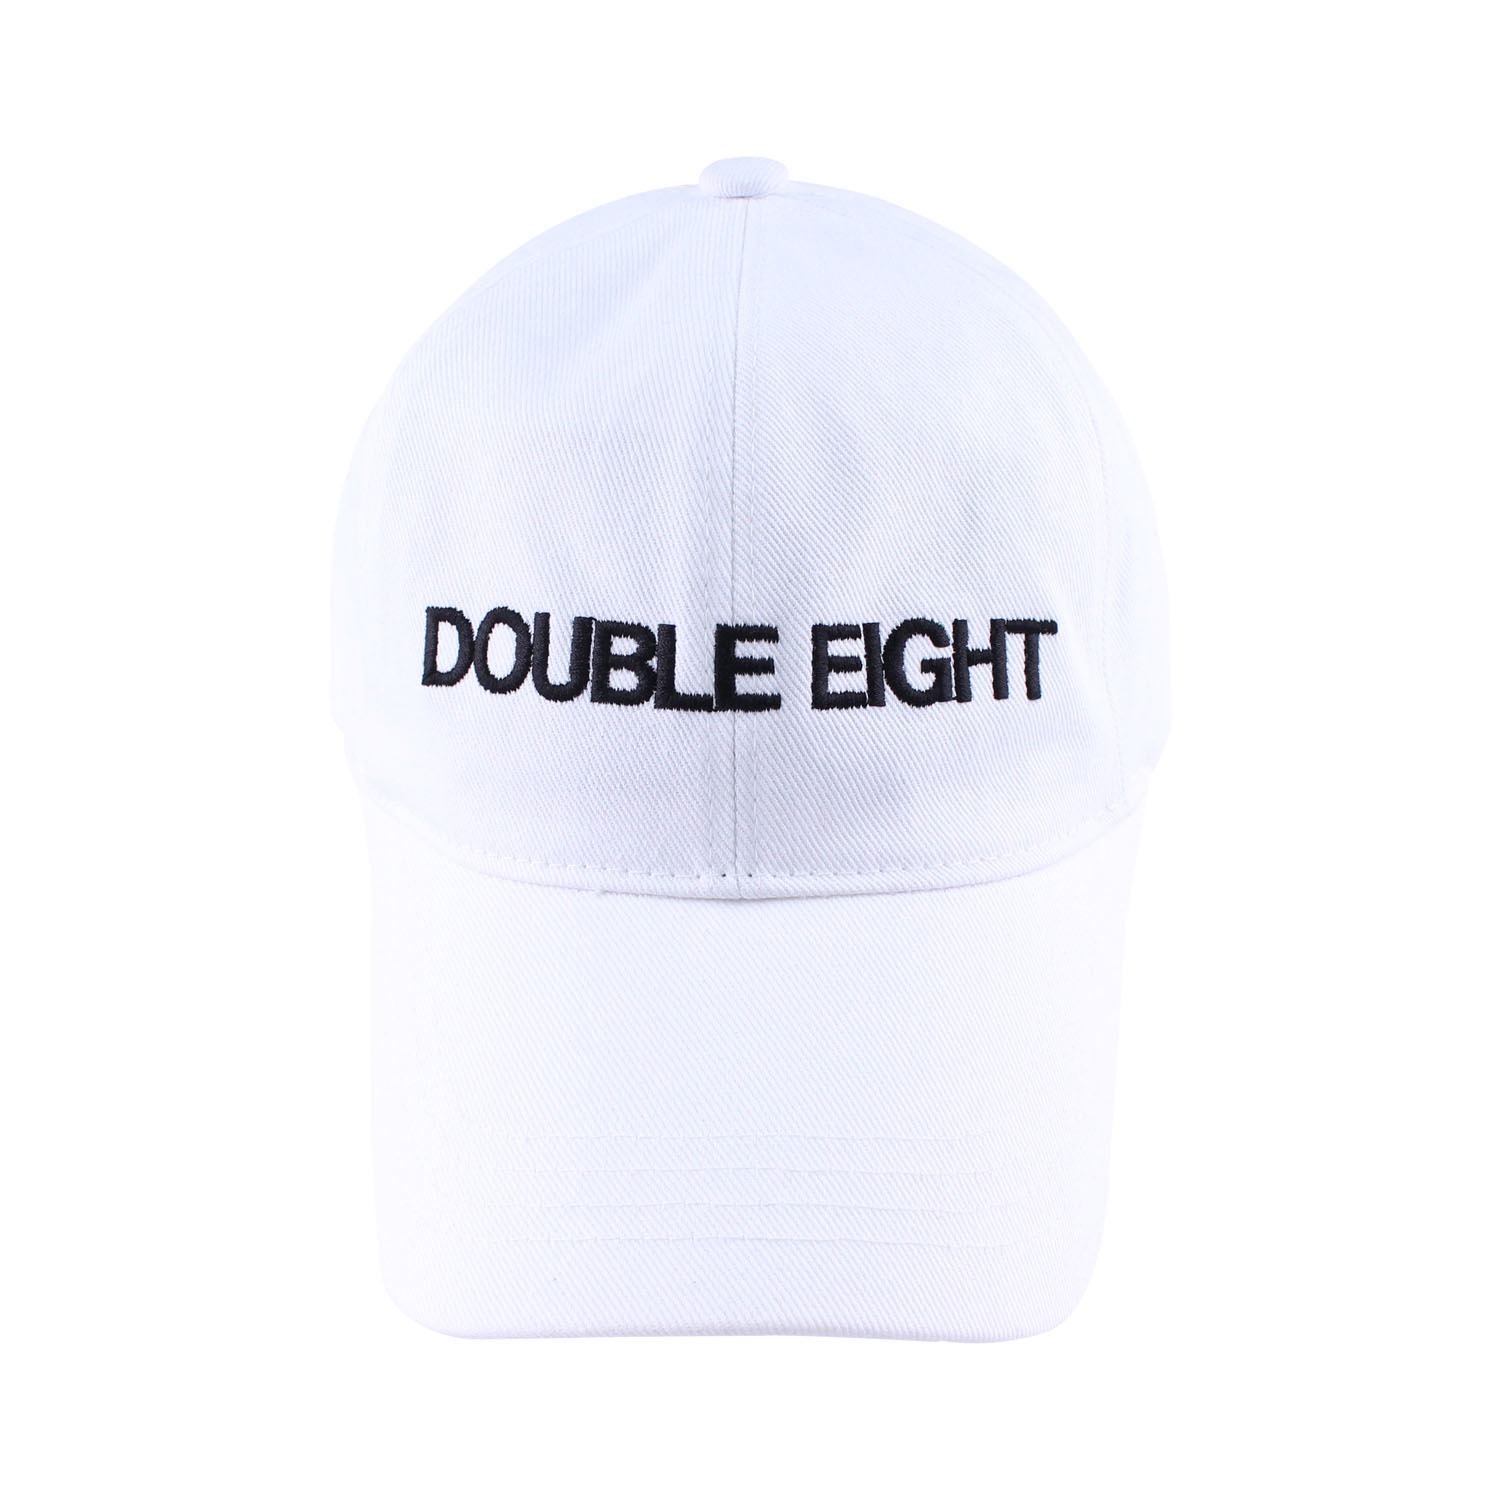 DOUBLE EIGHT BALL CAP (WHITE)